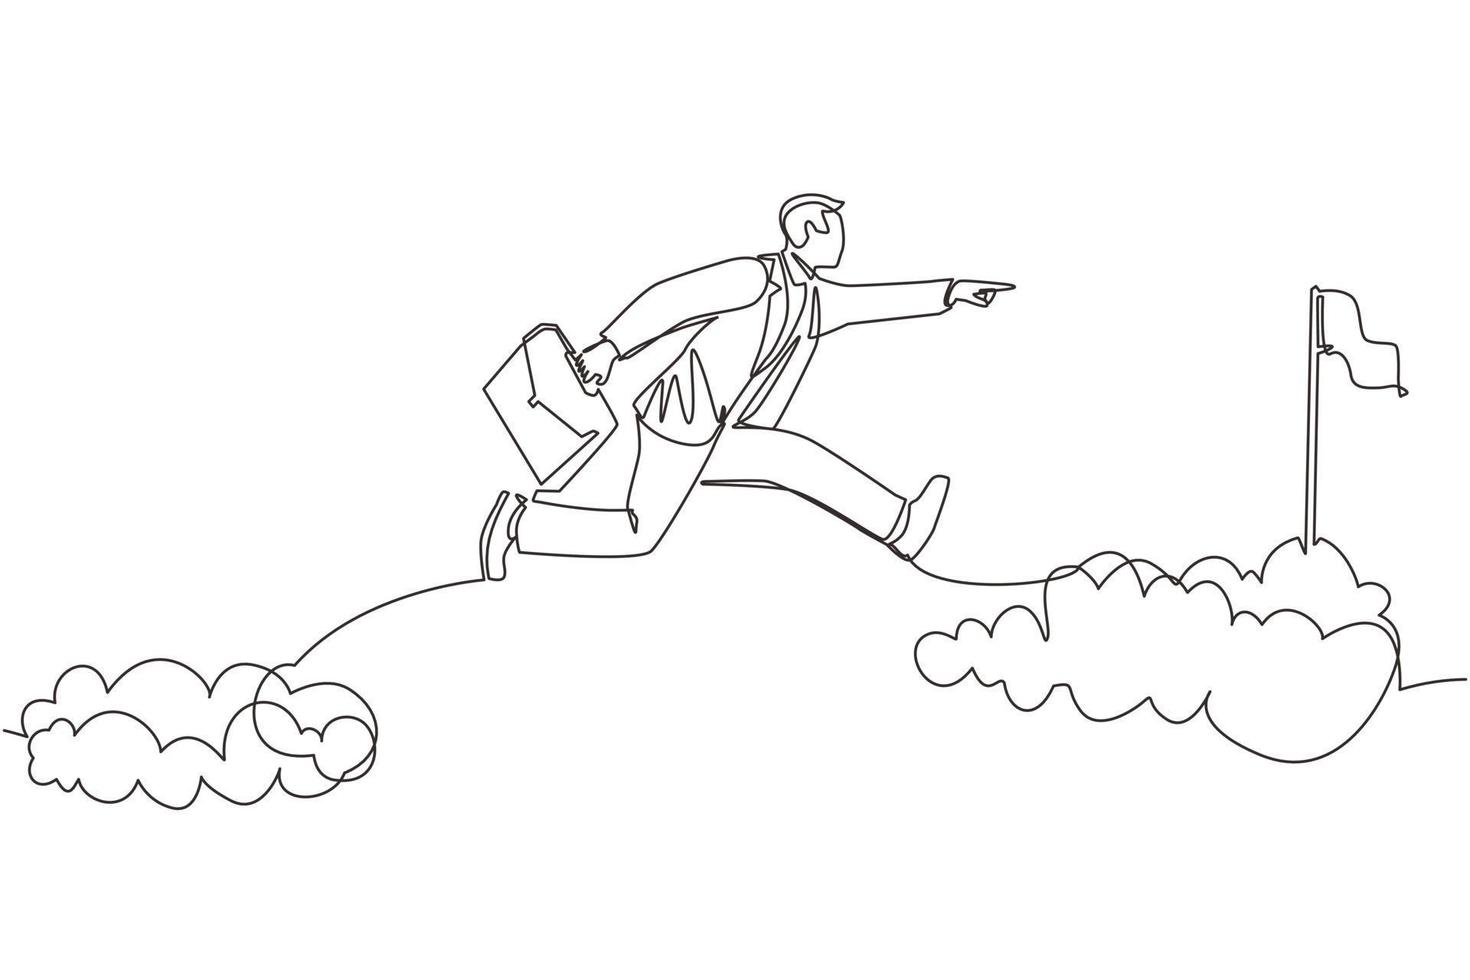 único desenho de linha contínua destemido empresário corajoso arrisca-se saltando sobre nuvens para alcançar seu alvo de sucesso ou bandeira. desafio de sua carreira. uma linha desenhar ilustração em vetor design gráfico